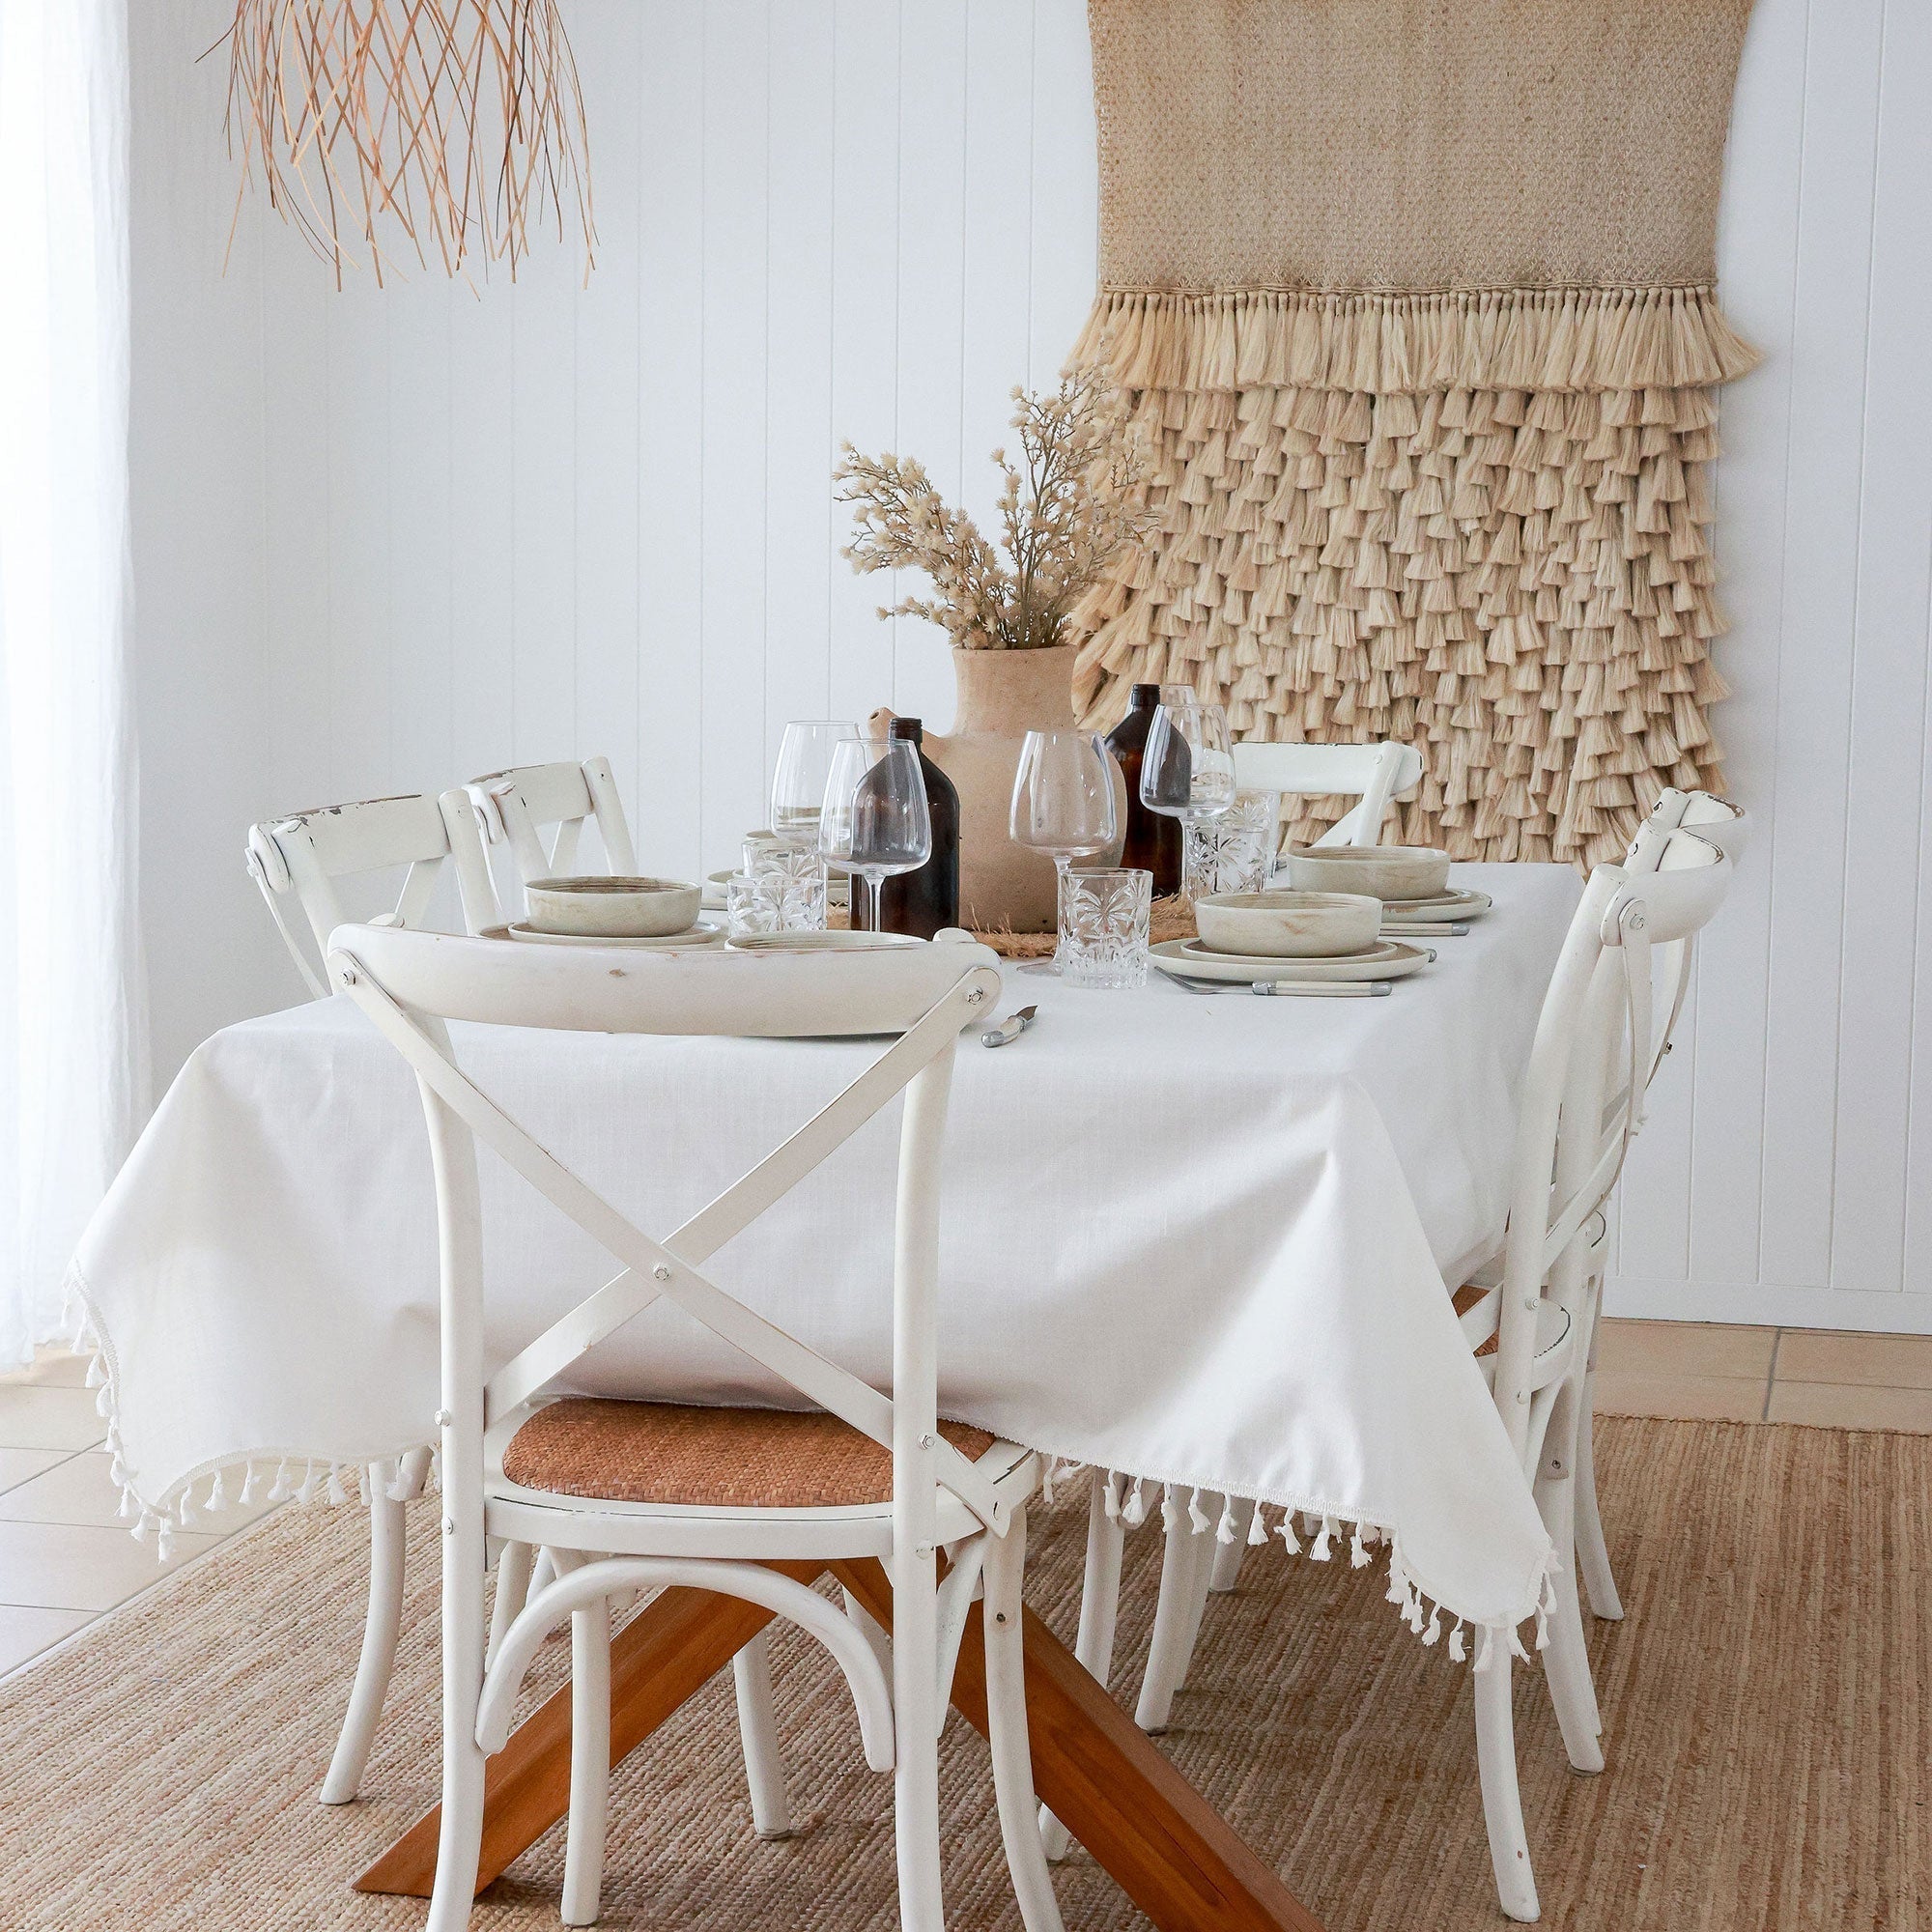 Tablecloth-Palm Cove Sage-250cm x 142cm